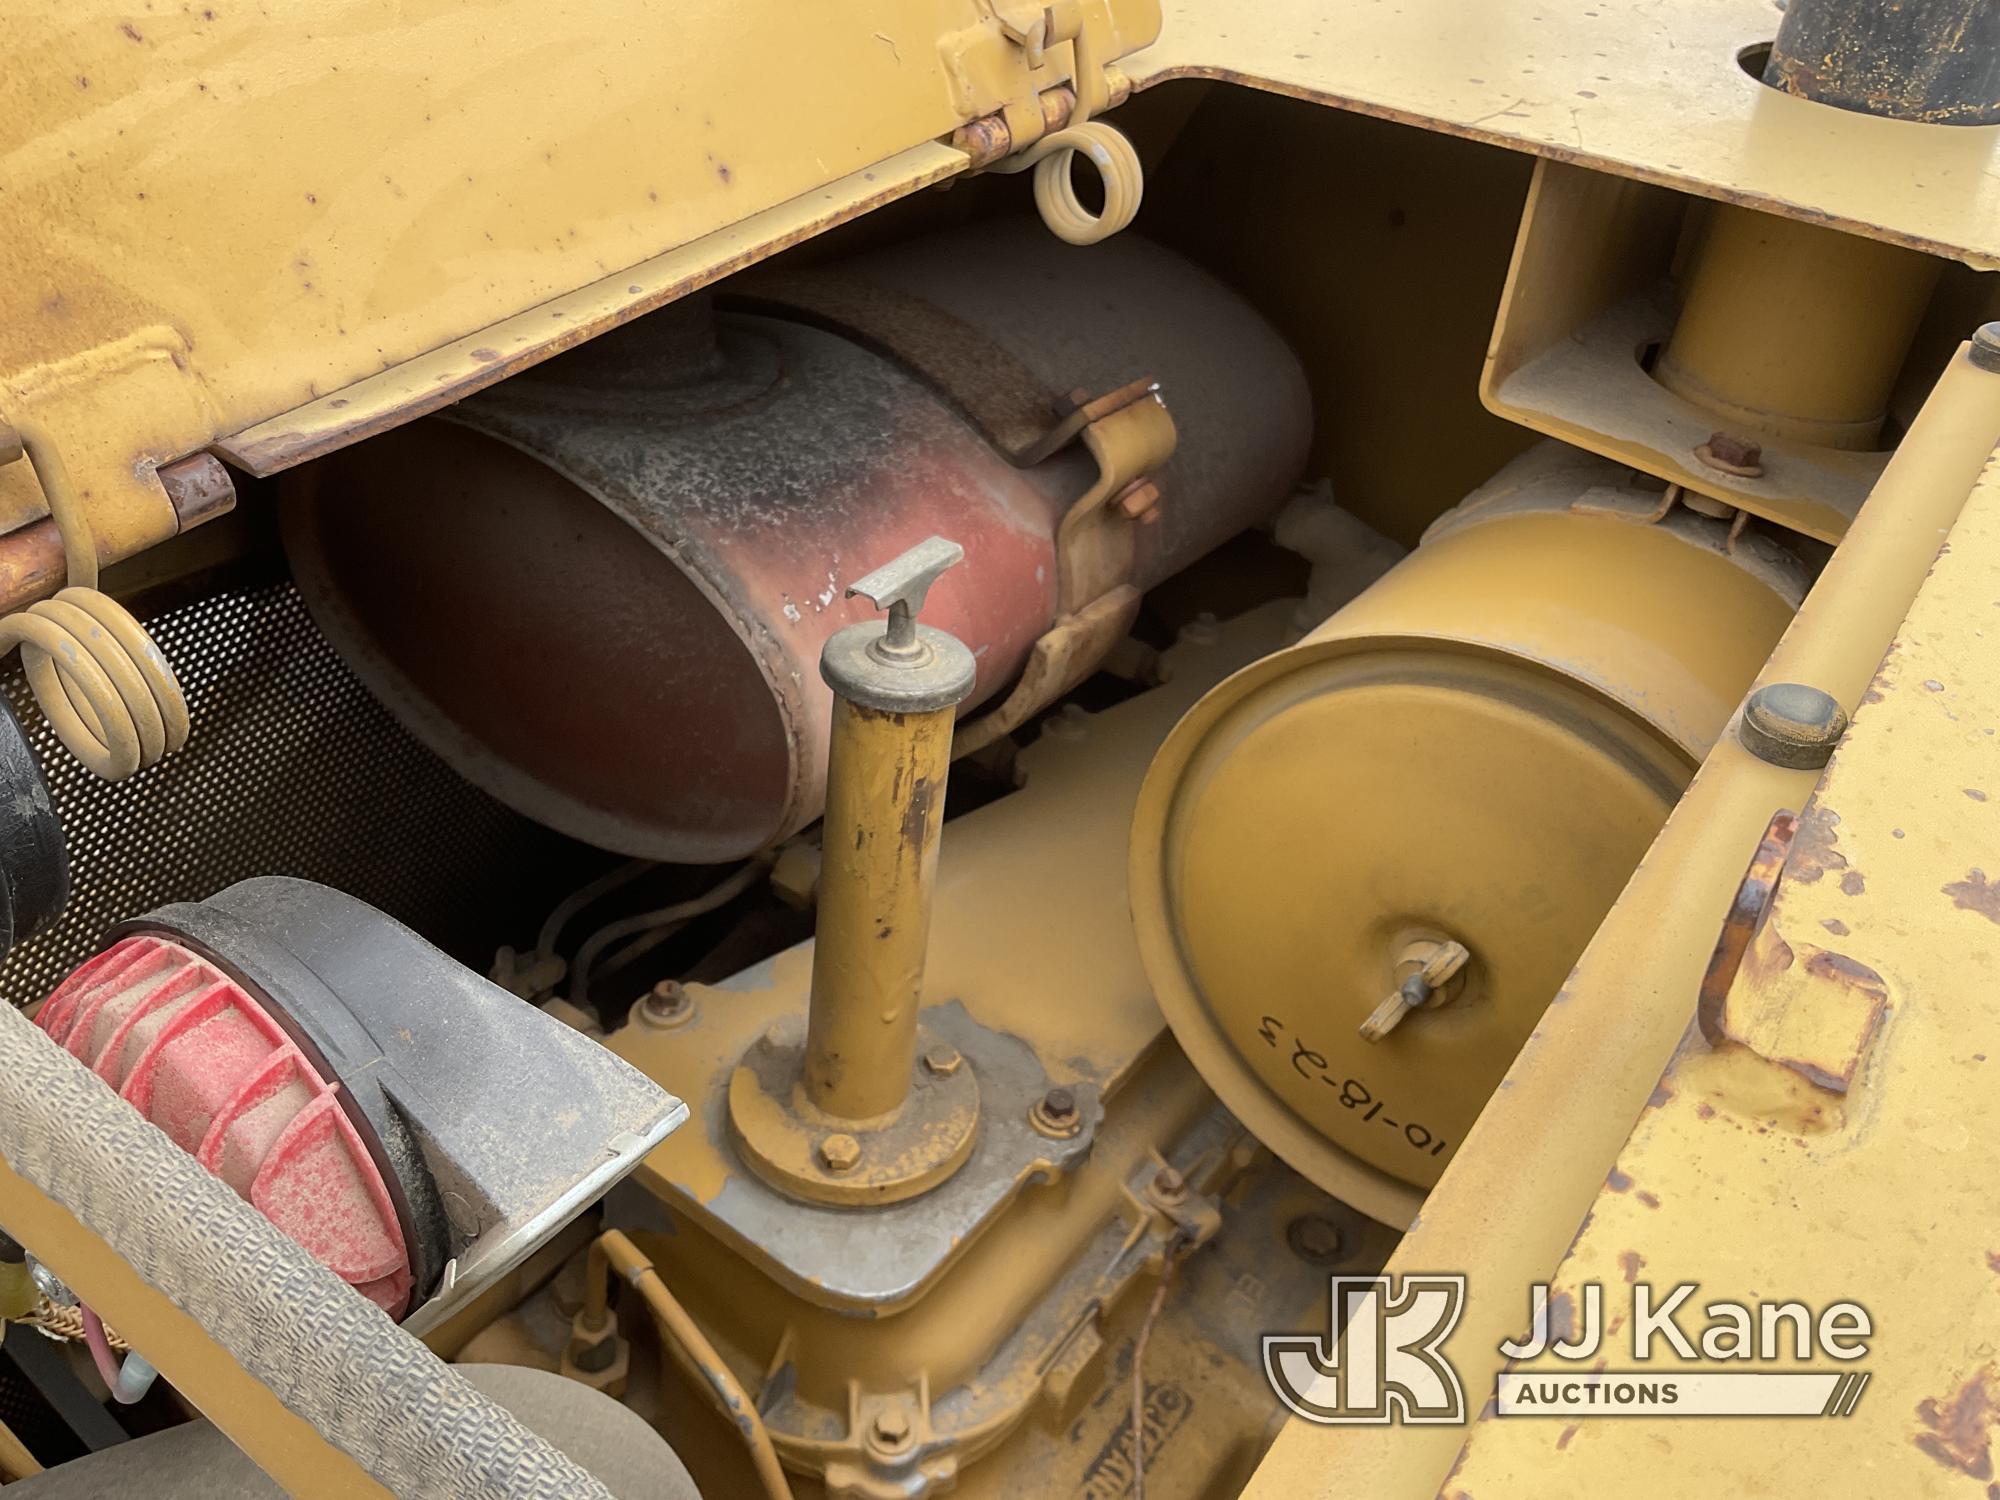 (Jurupa Valley, CA) 1989 Caterpillar Loader 935C Tractor Tracked Skid Steer Loader Runs, Moves & Ope